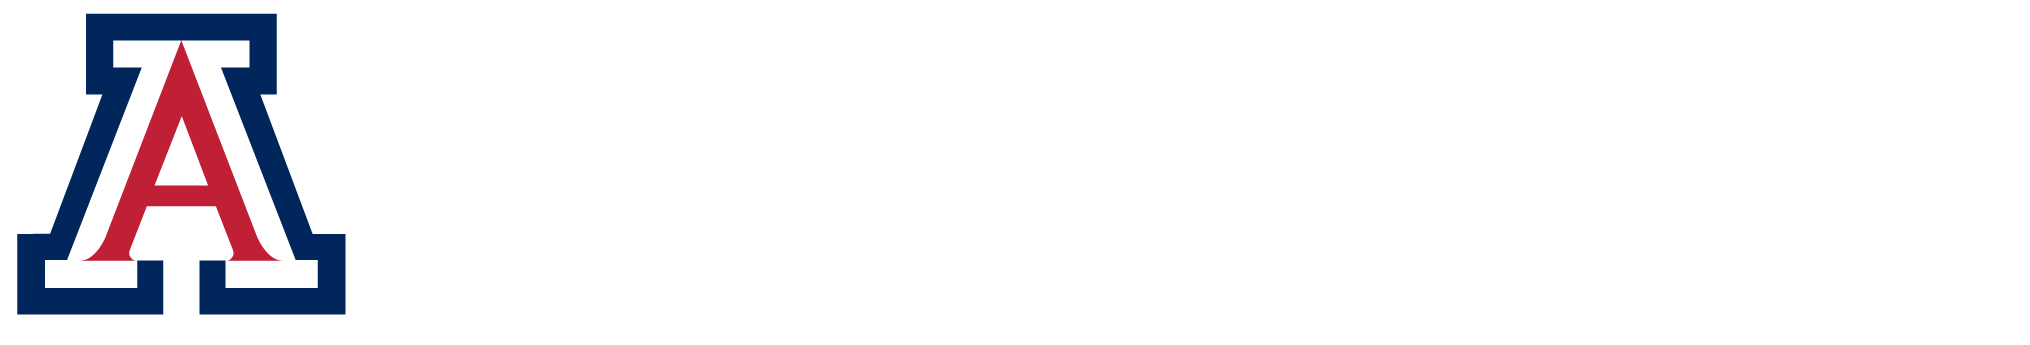 Univeristy of Arizona Logo - Facilities Management - University of Arizona